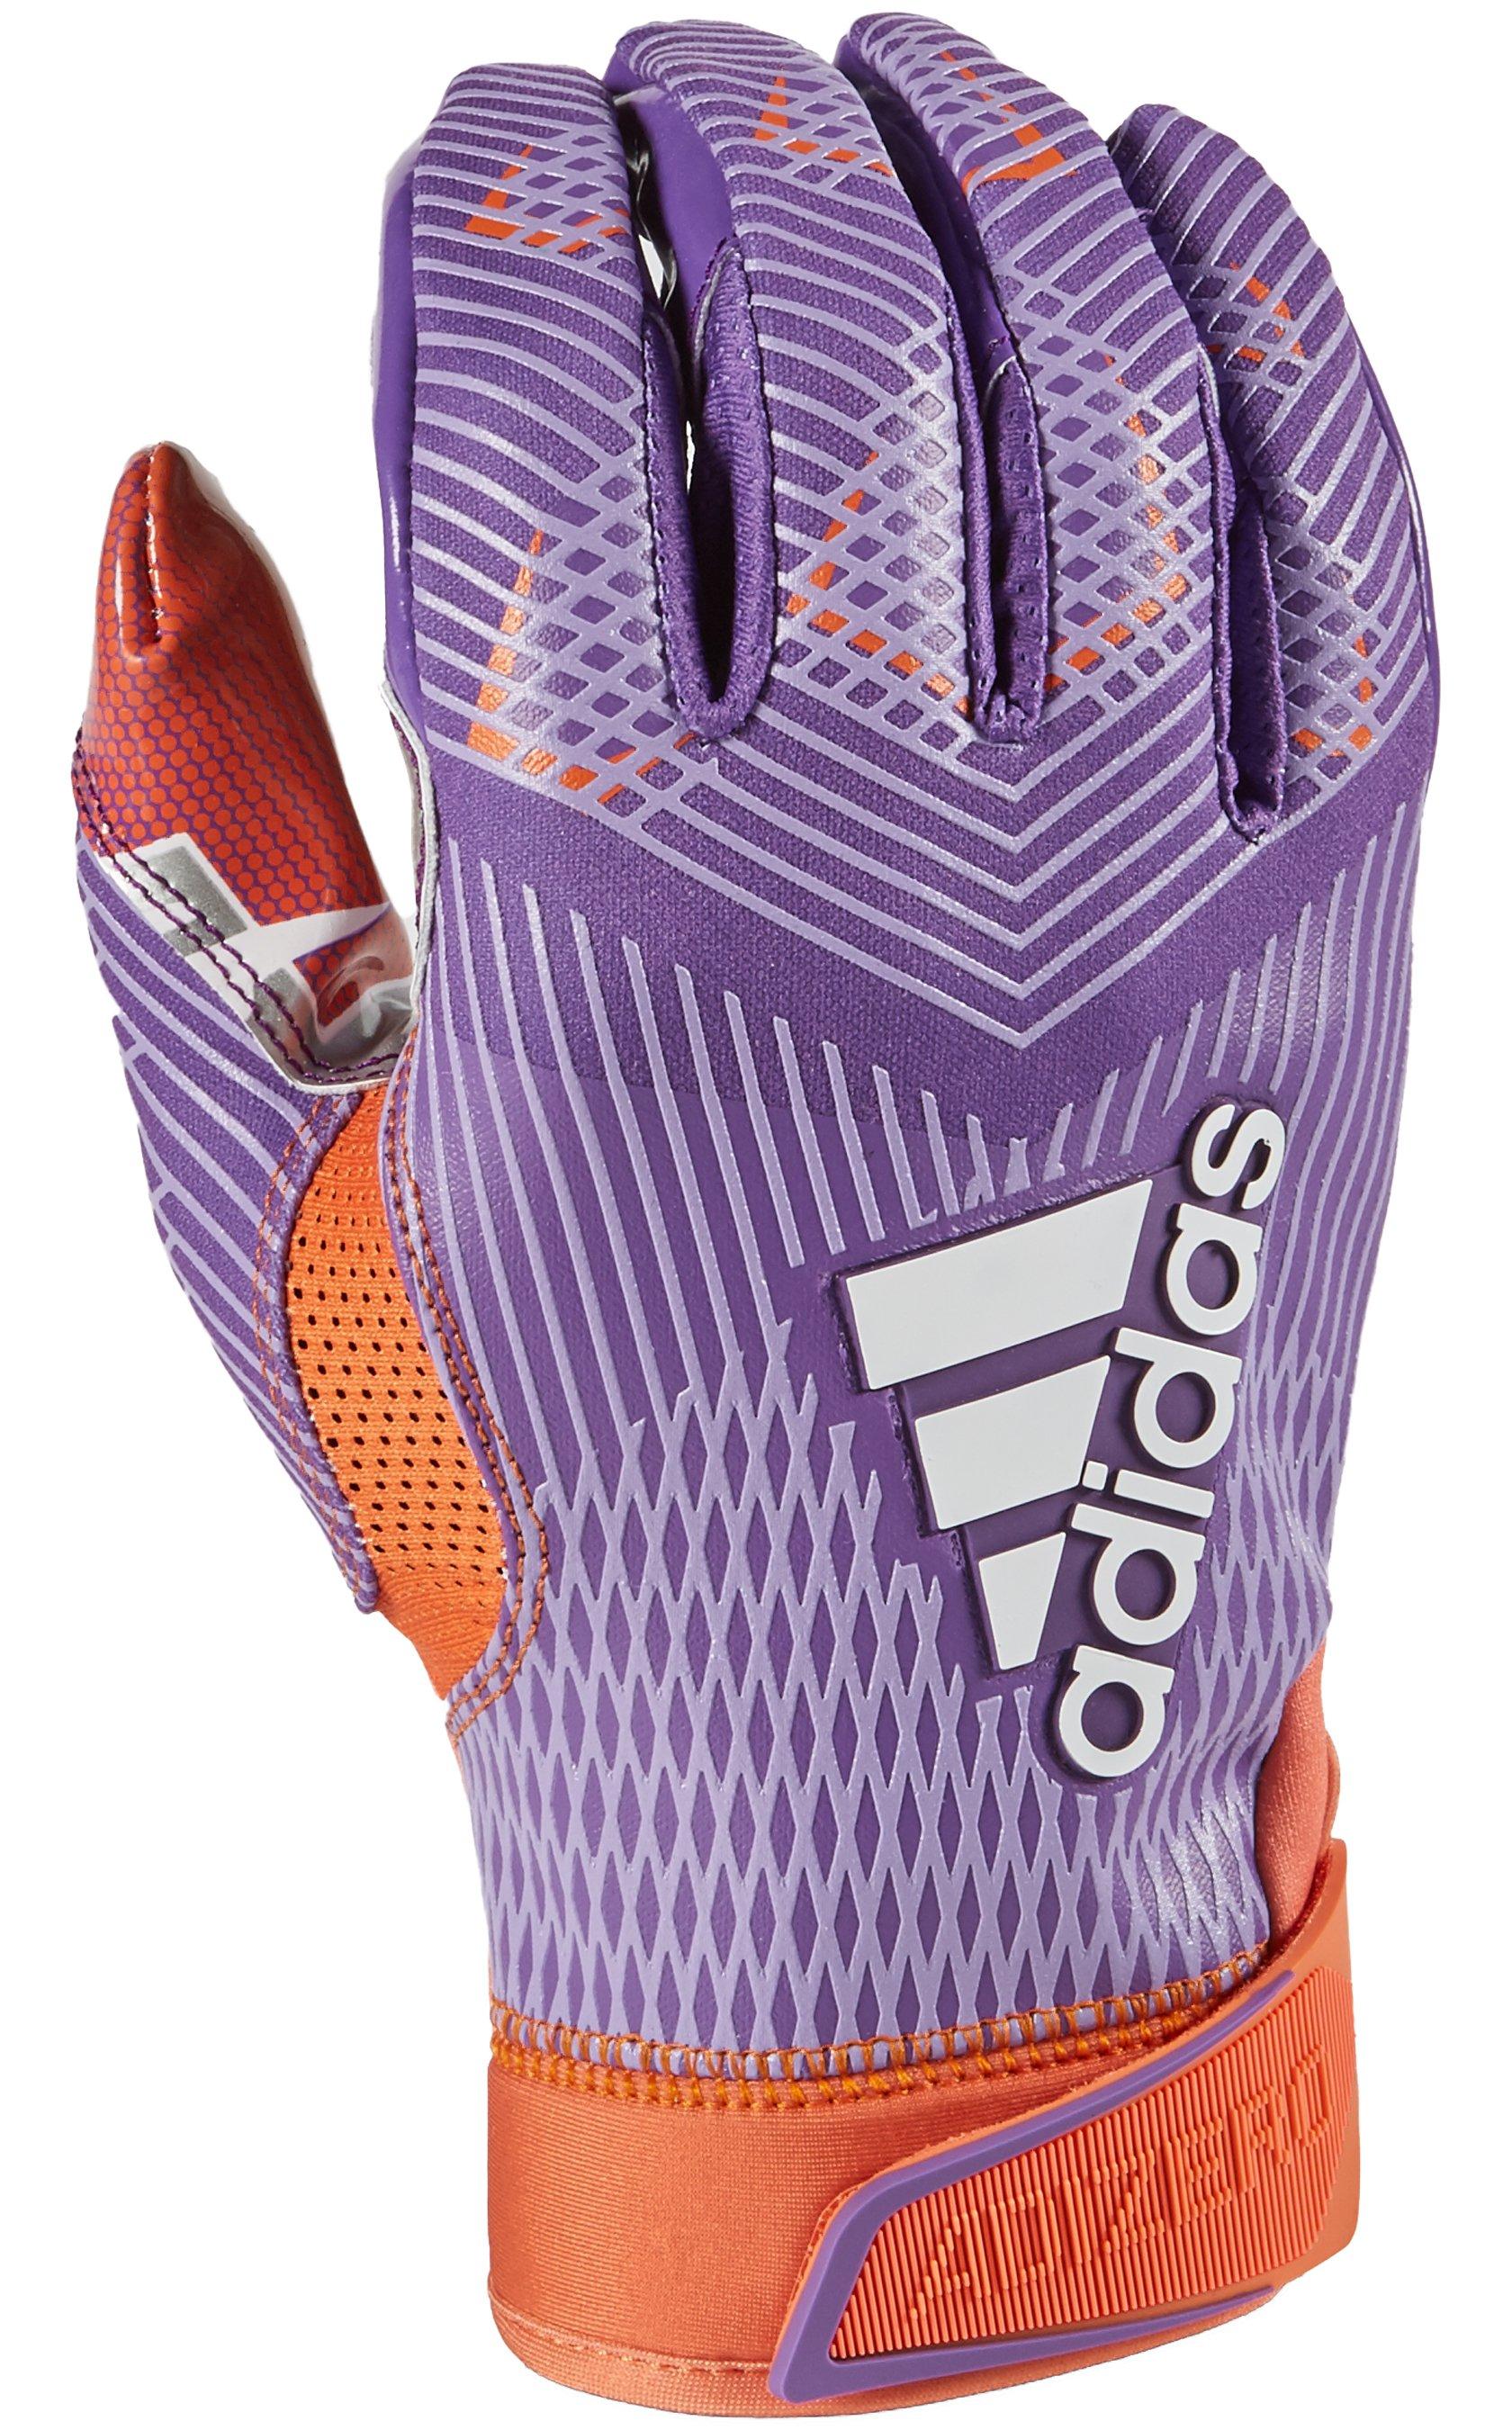 adidas football gloves purple